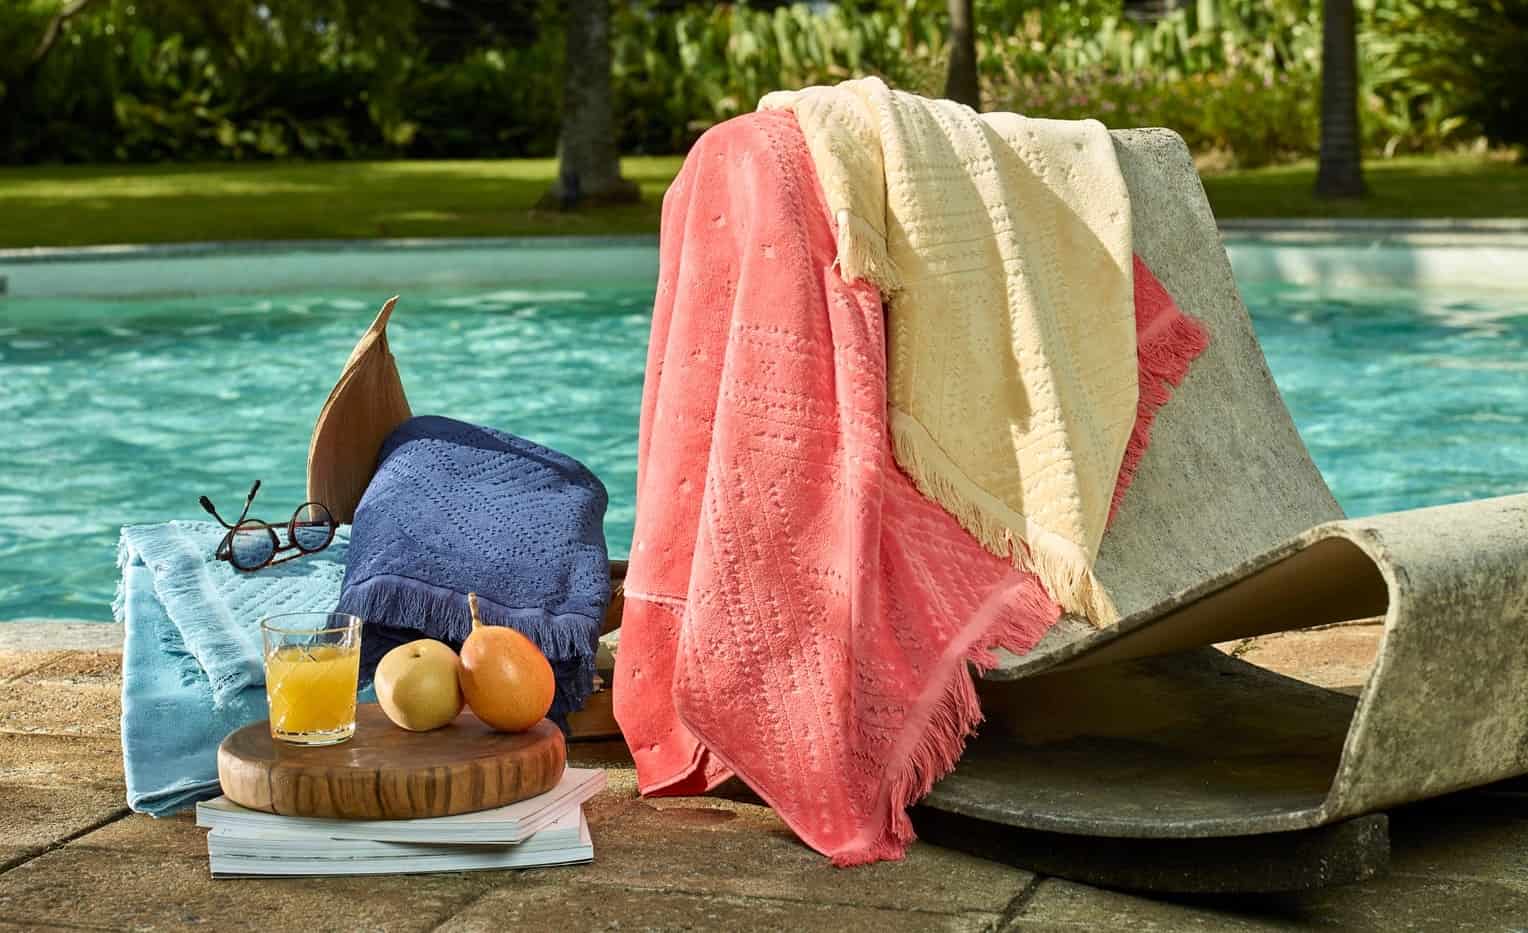 toalhas de praia em uma cadeira a beira de uma piscina, ao lado um copo com suco laranja e duas pêras